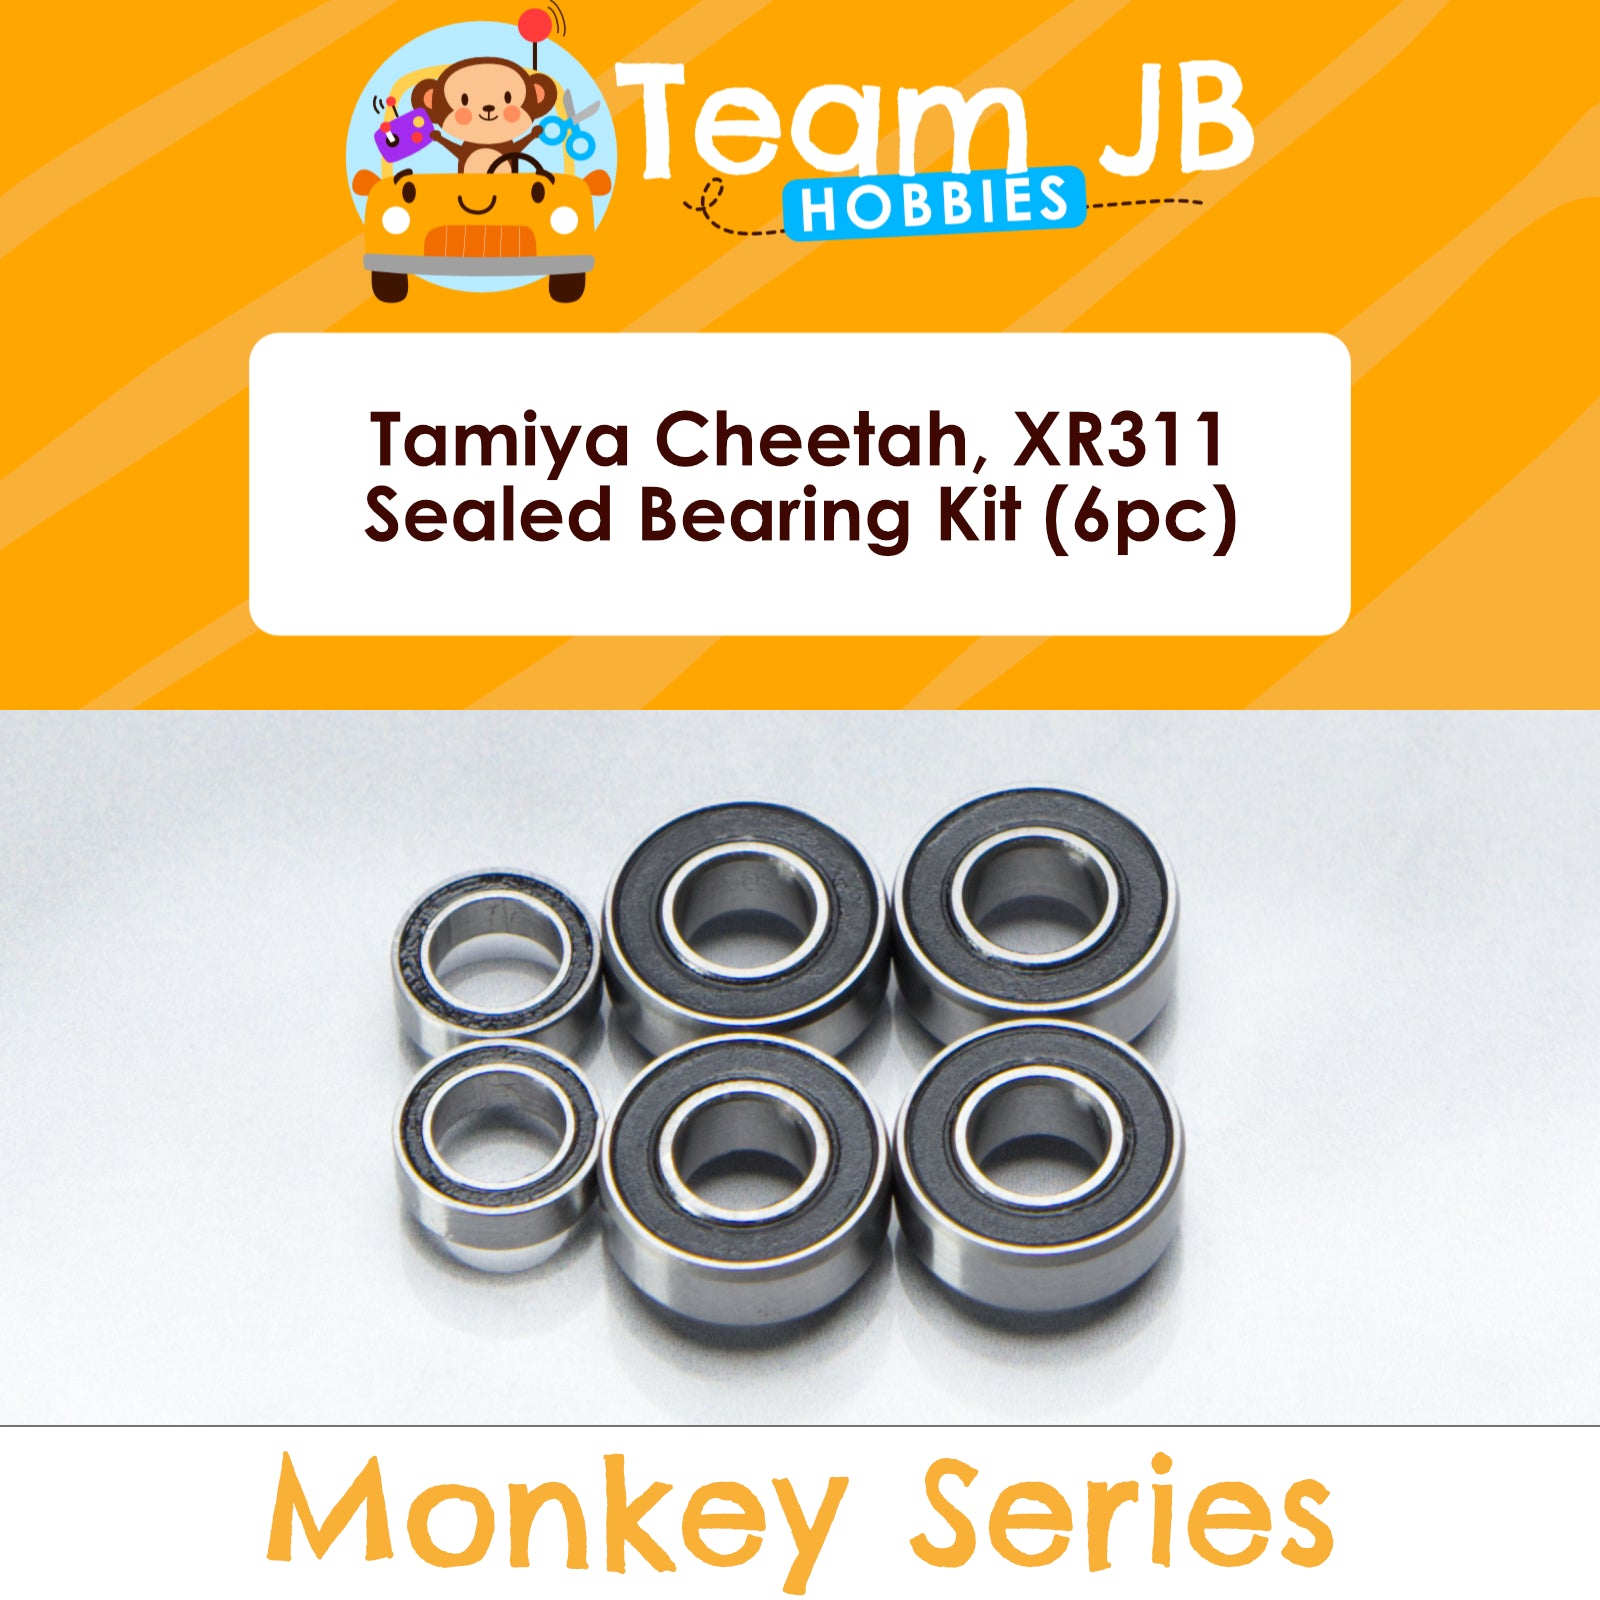 Tamiya Cheetah, XR311 - Sealed Bearing Kit